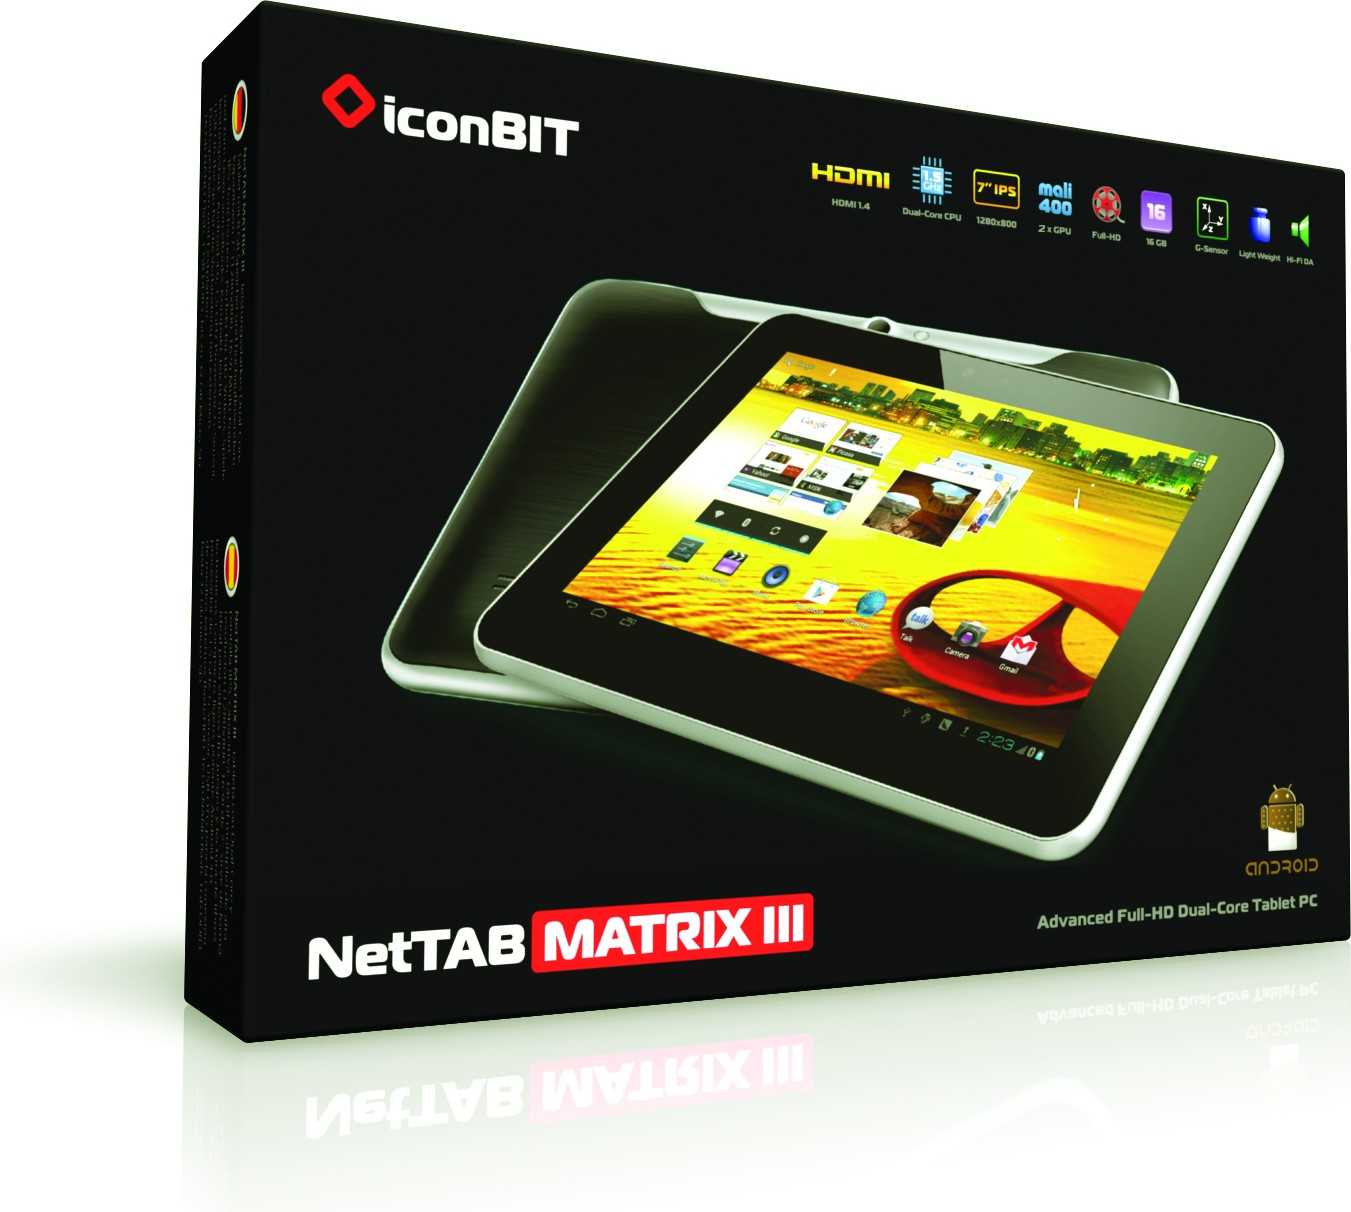 Планшет iconbit nettab space ii — купить, цена и характеристики, отзывы